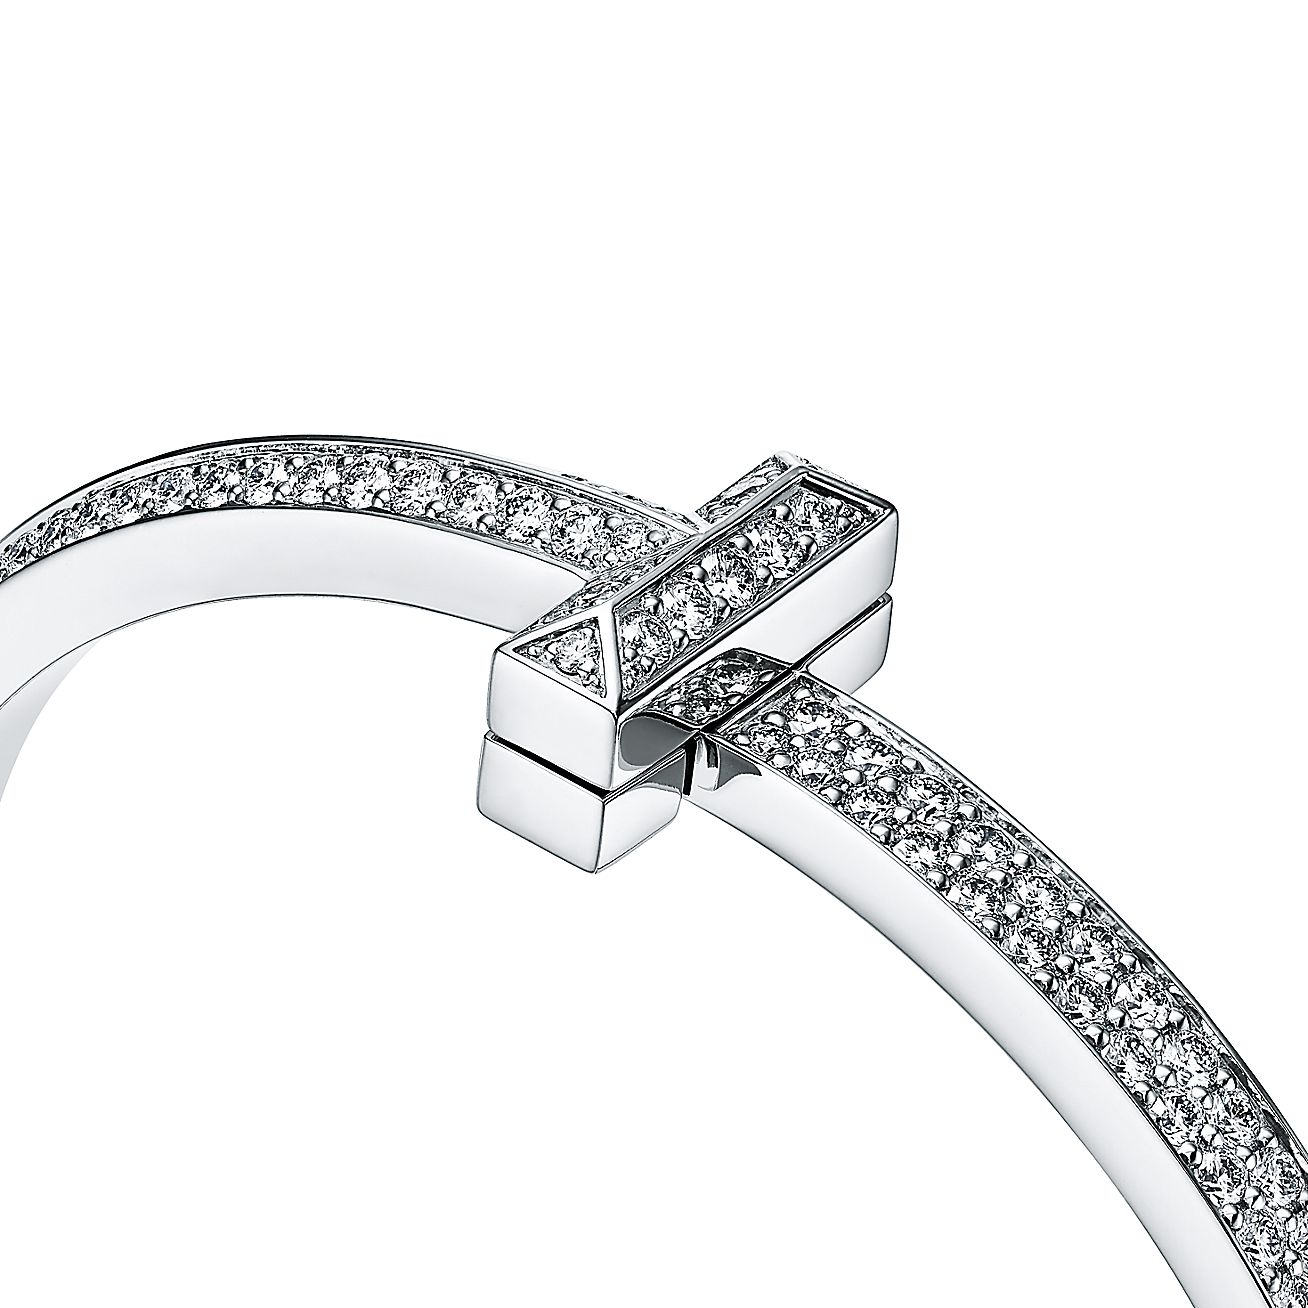 Tiffany T T1 Hinged Bangle Bracelet in White Gold, Narrow, Size: Large